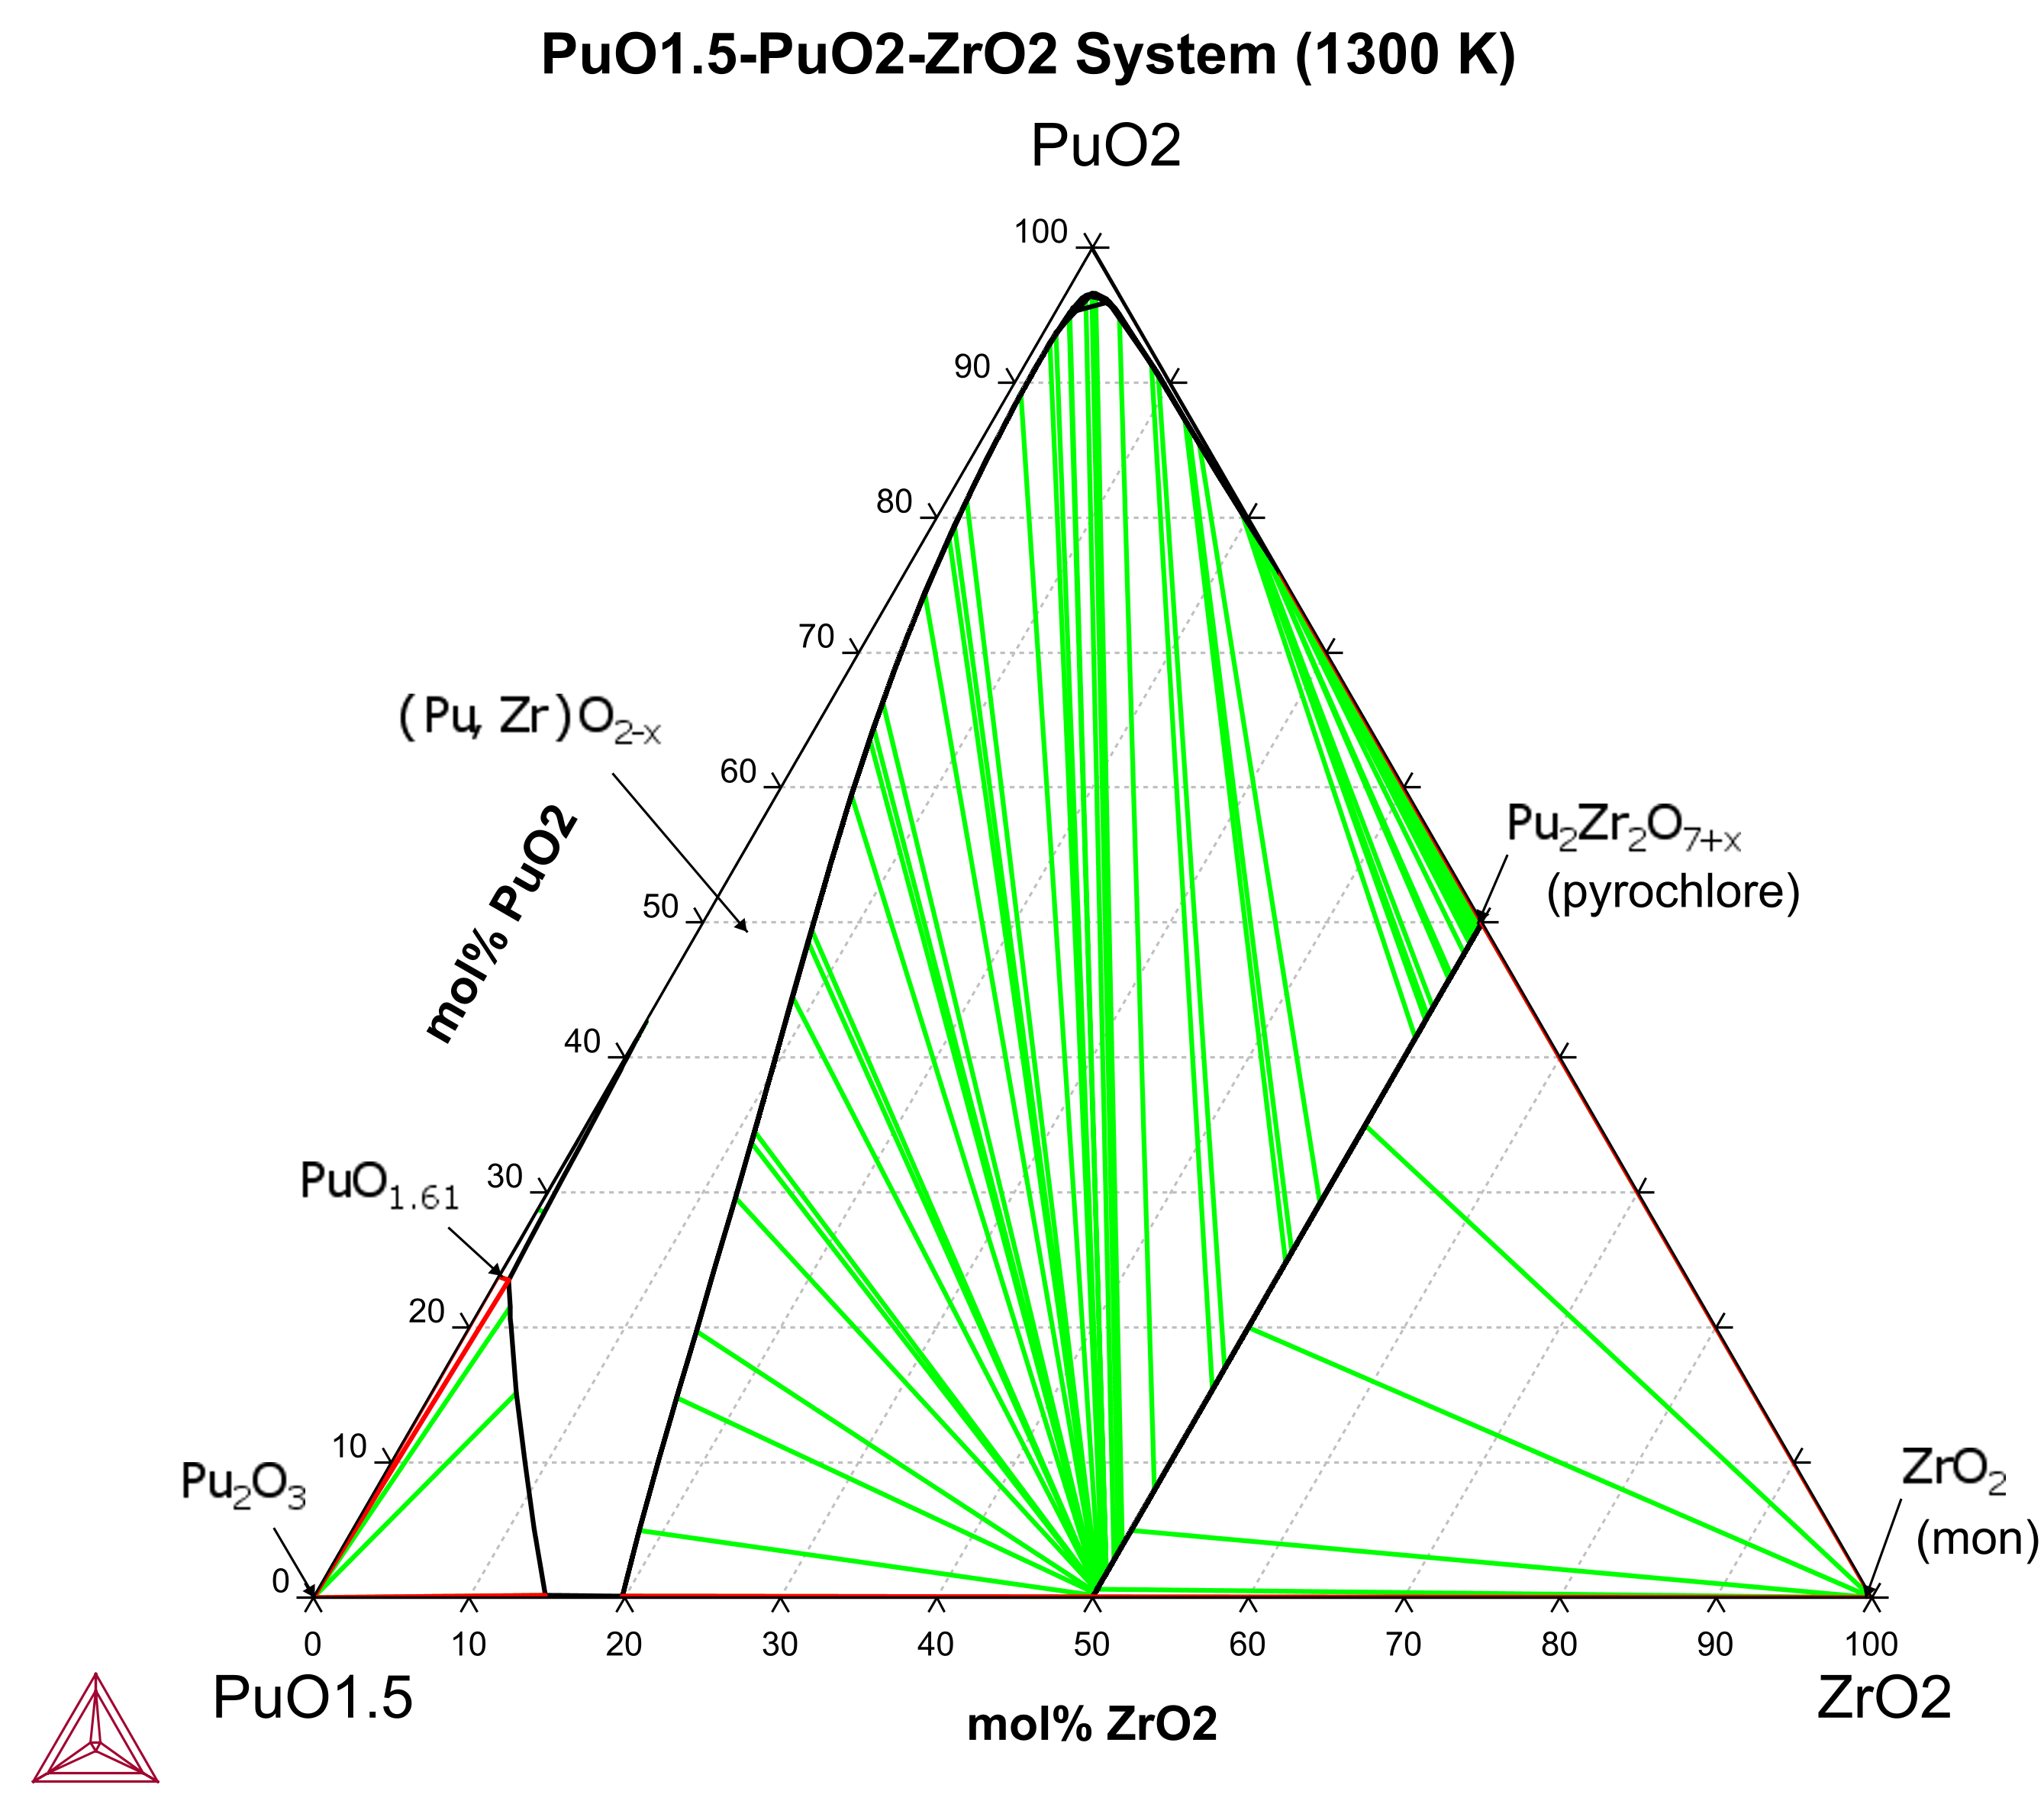 PuO1.5-PuO2-ZrO2 (1300 K)